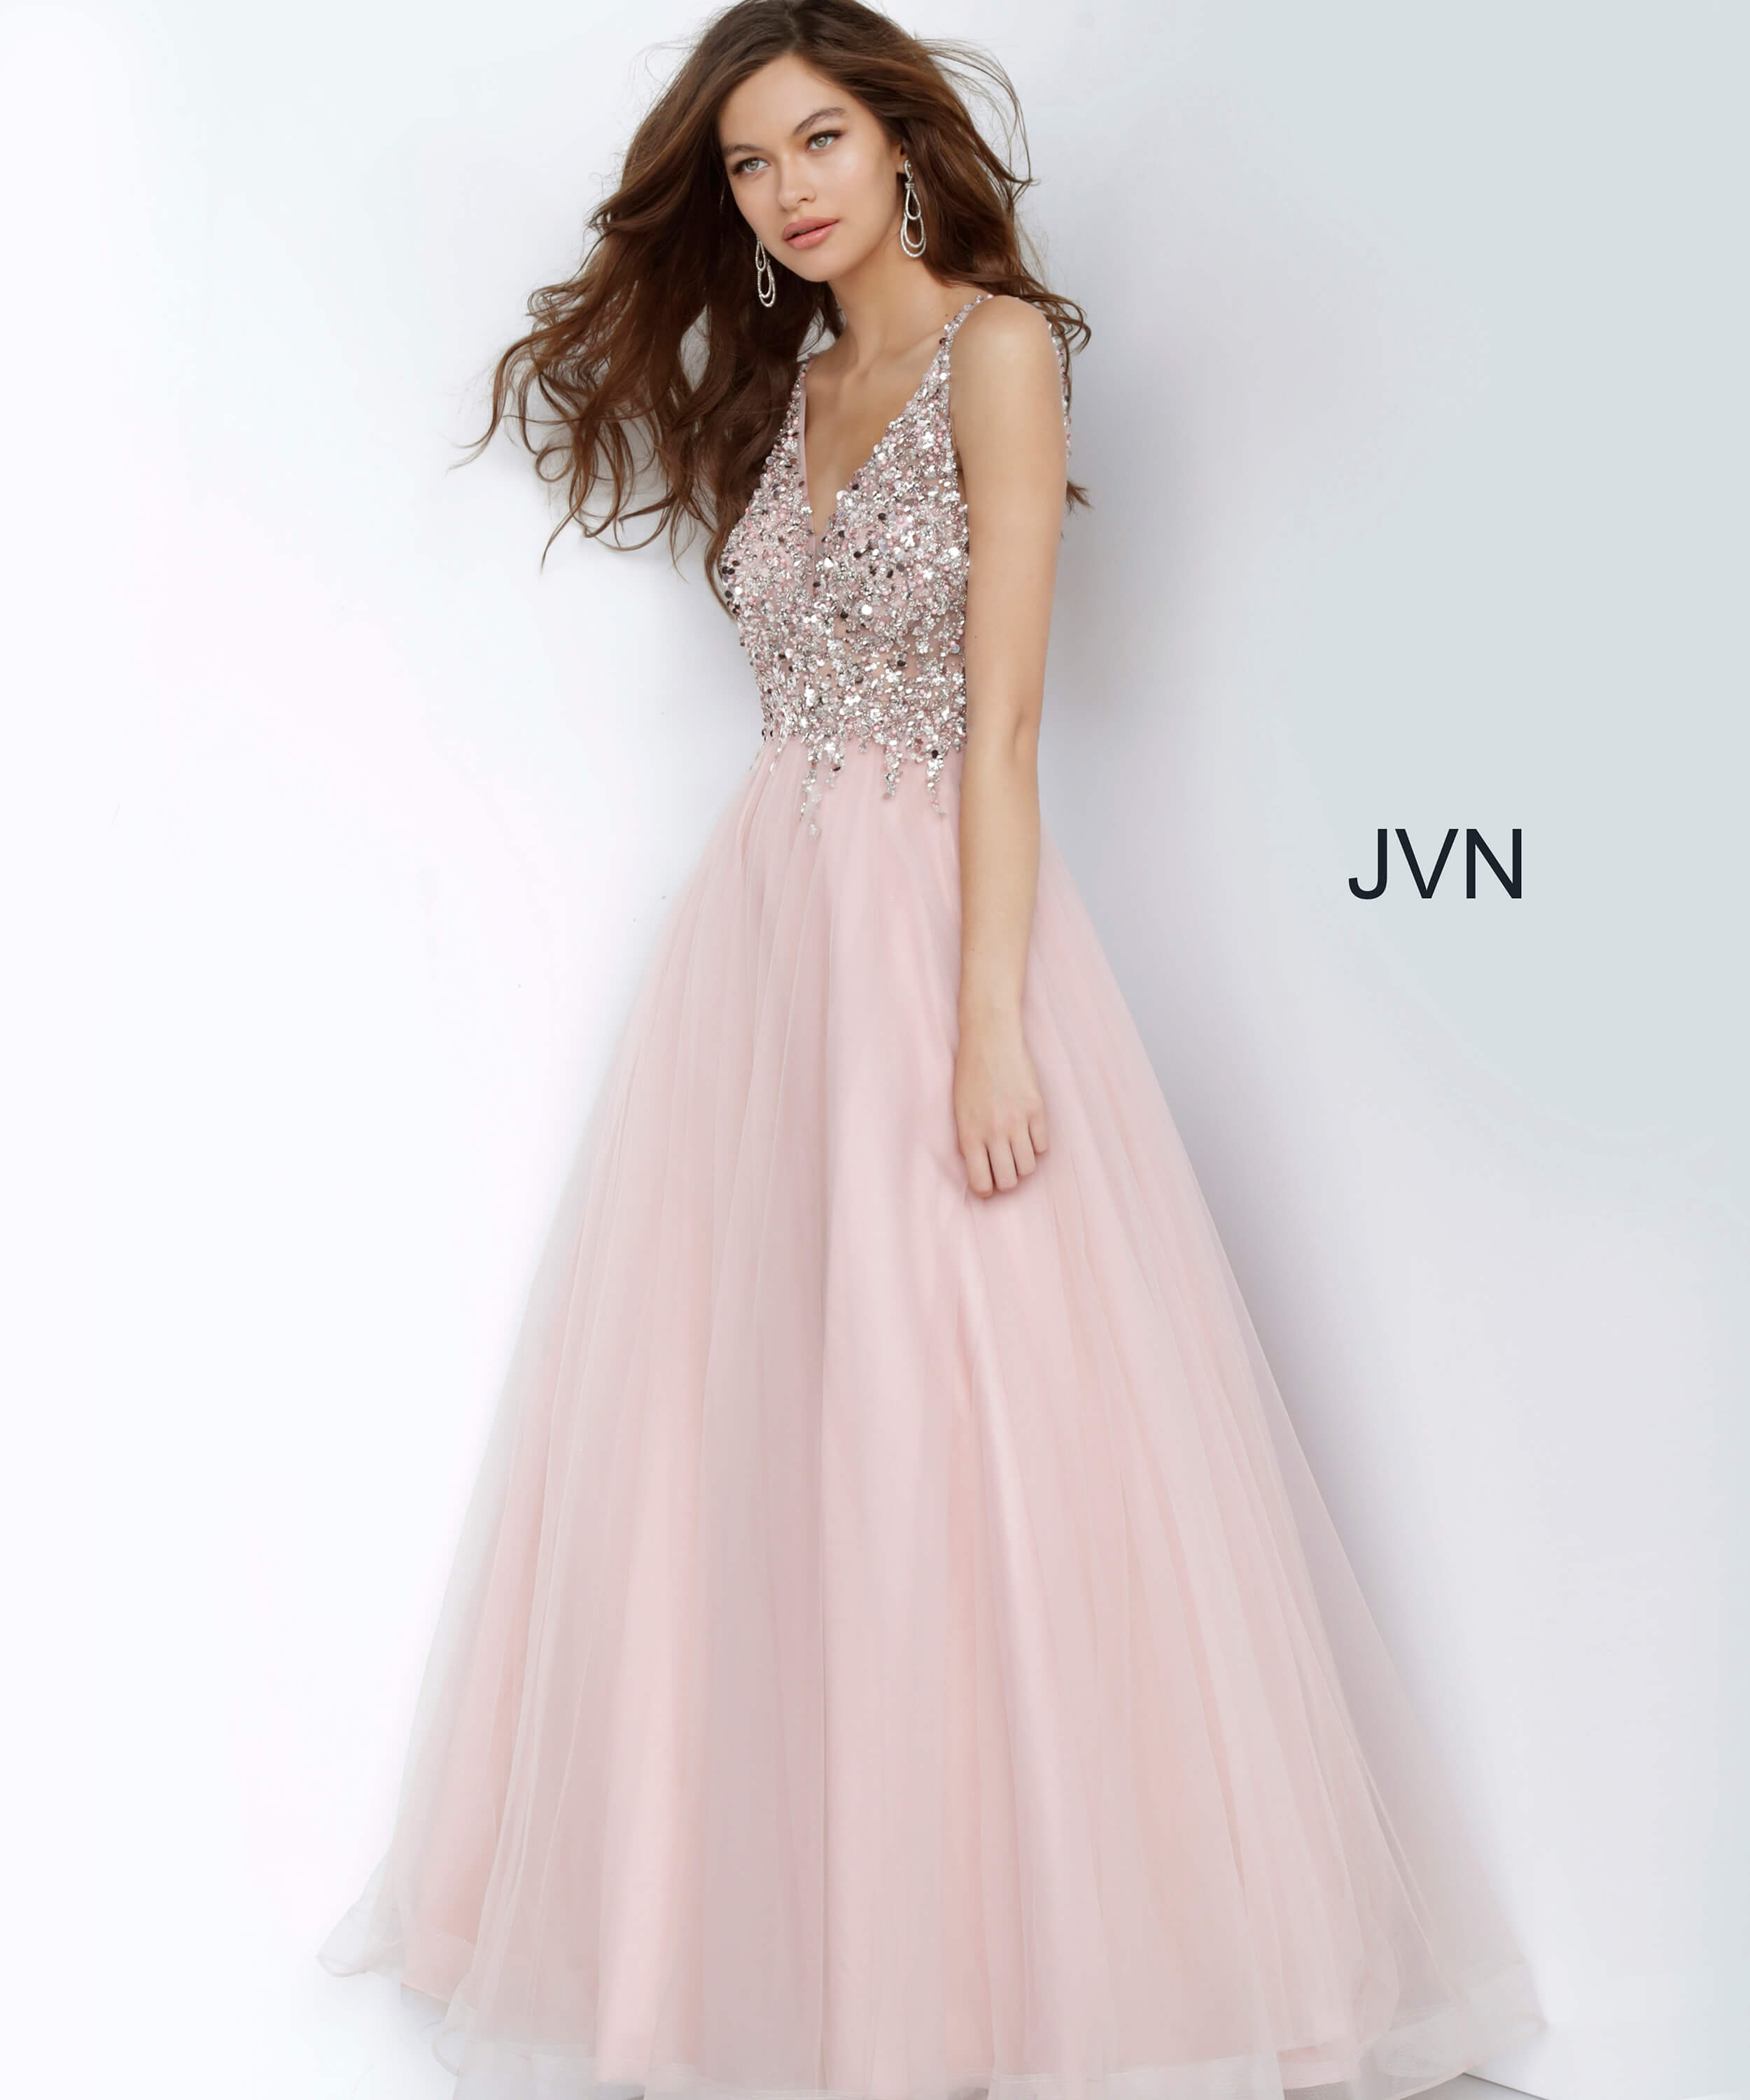 JVN2007 Dress | JVN Blush Beaded Bodice V Neck Ballgown